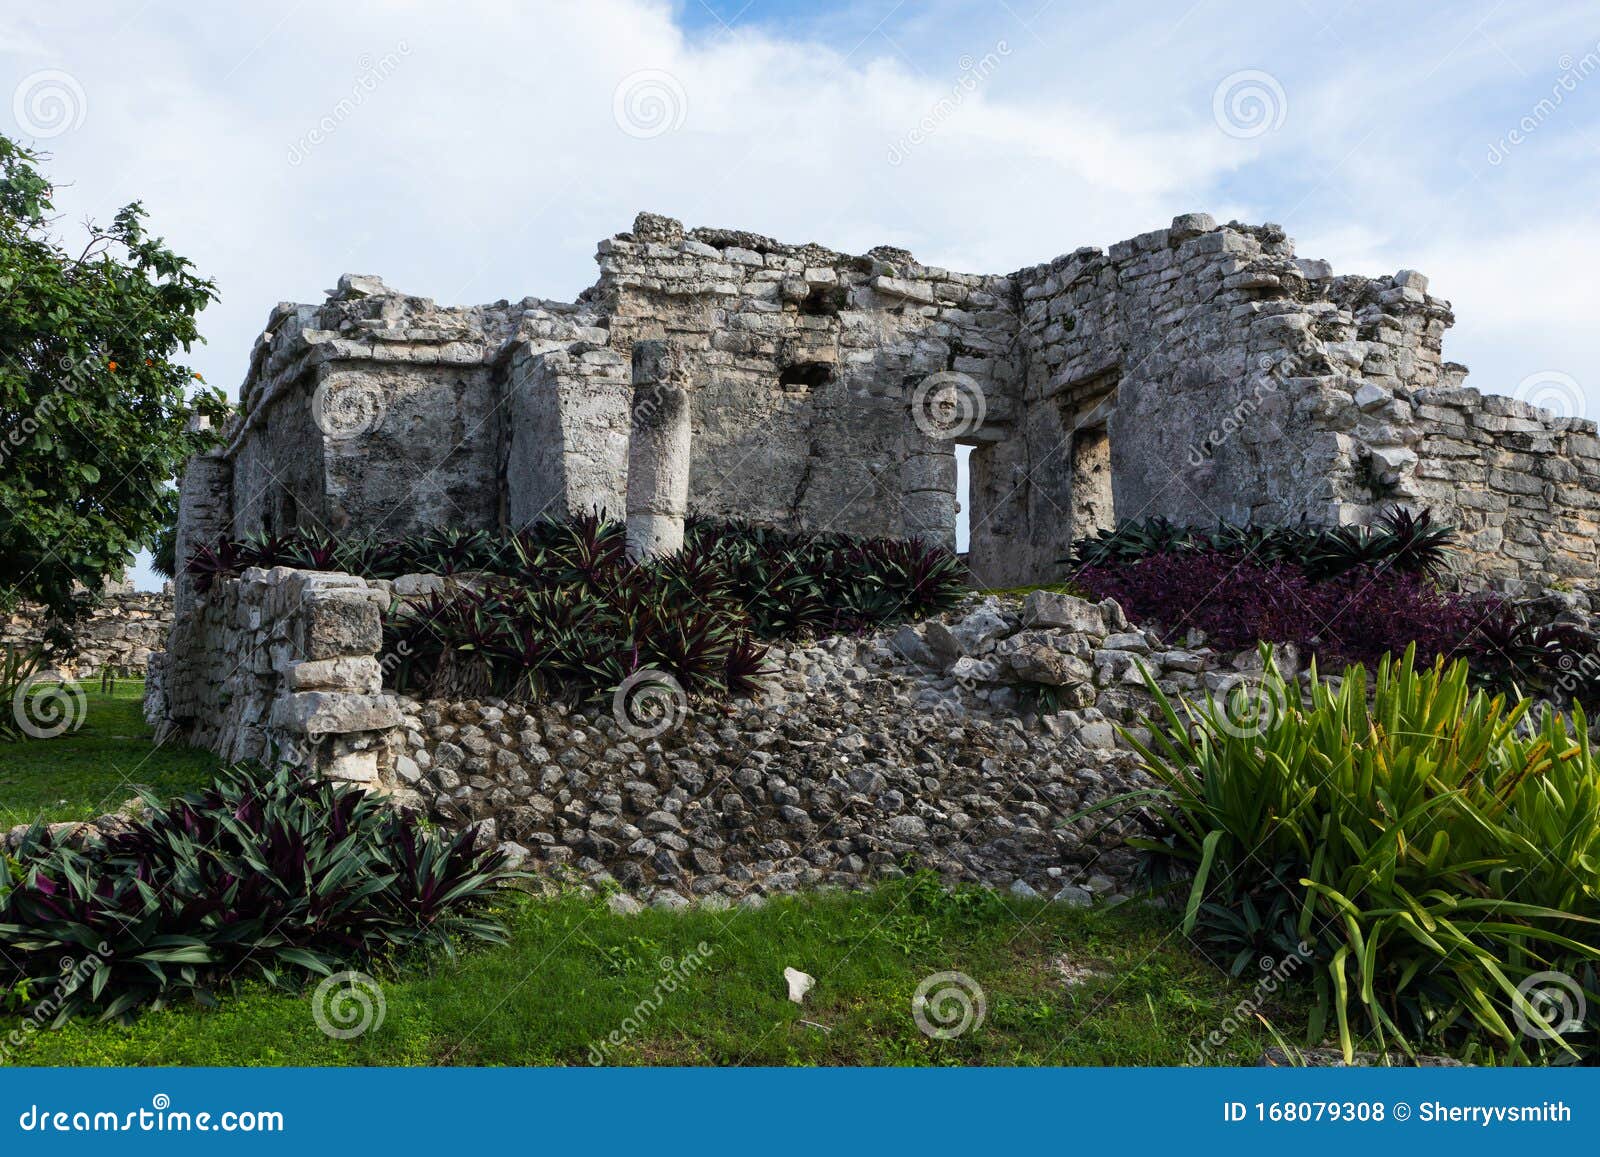 casa de las columnas mayan ruins